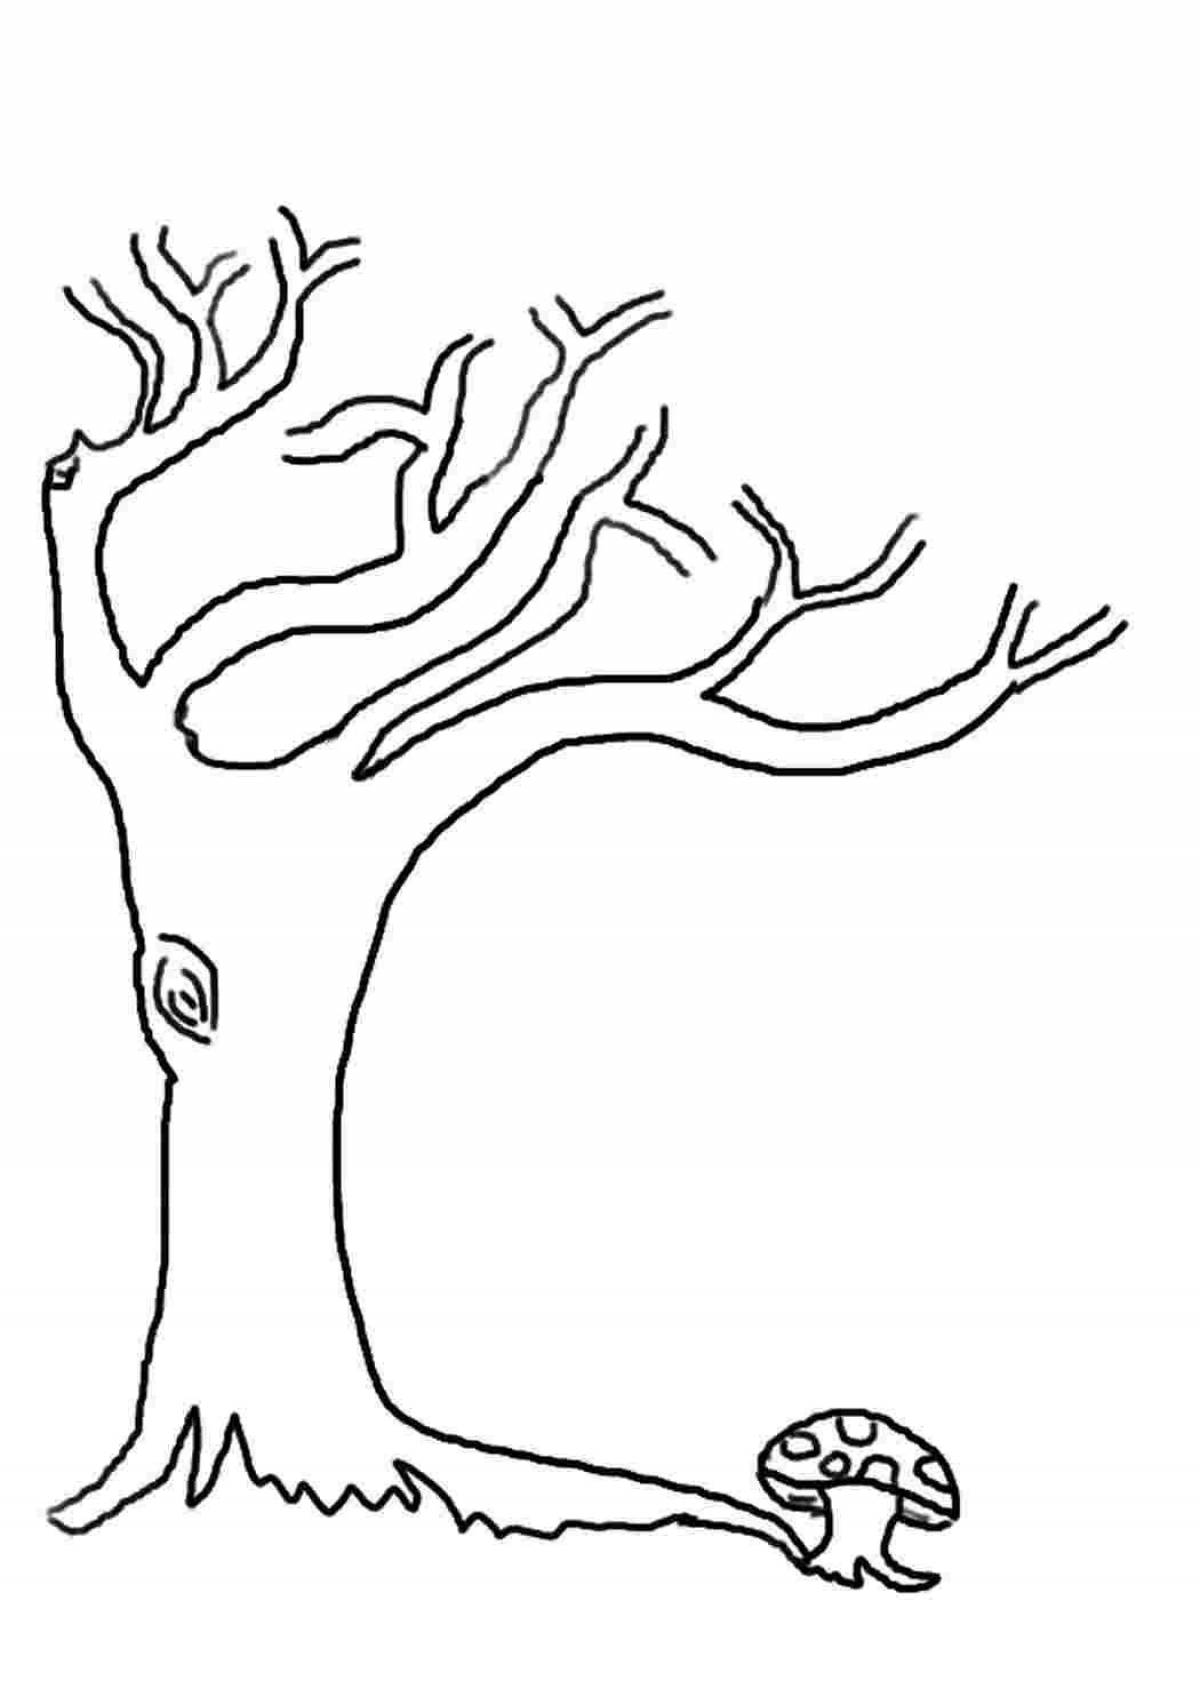 Дерево шаблон для рисования